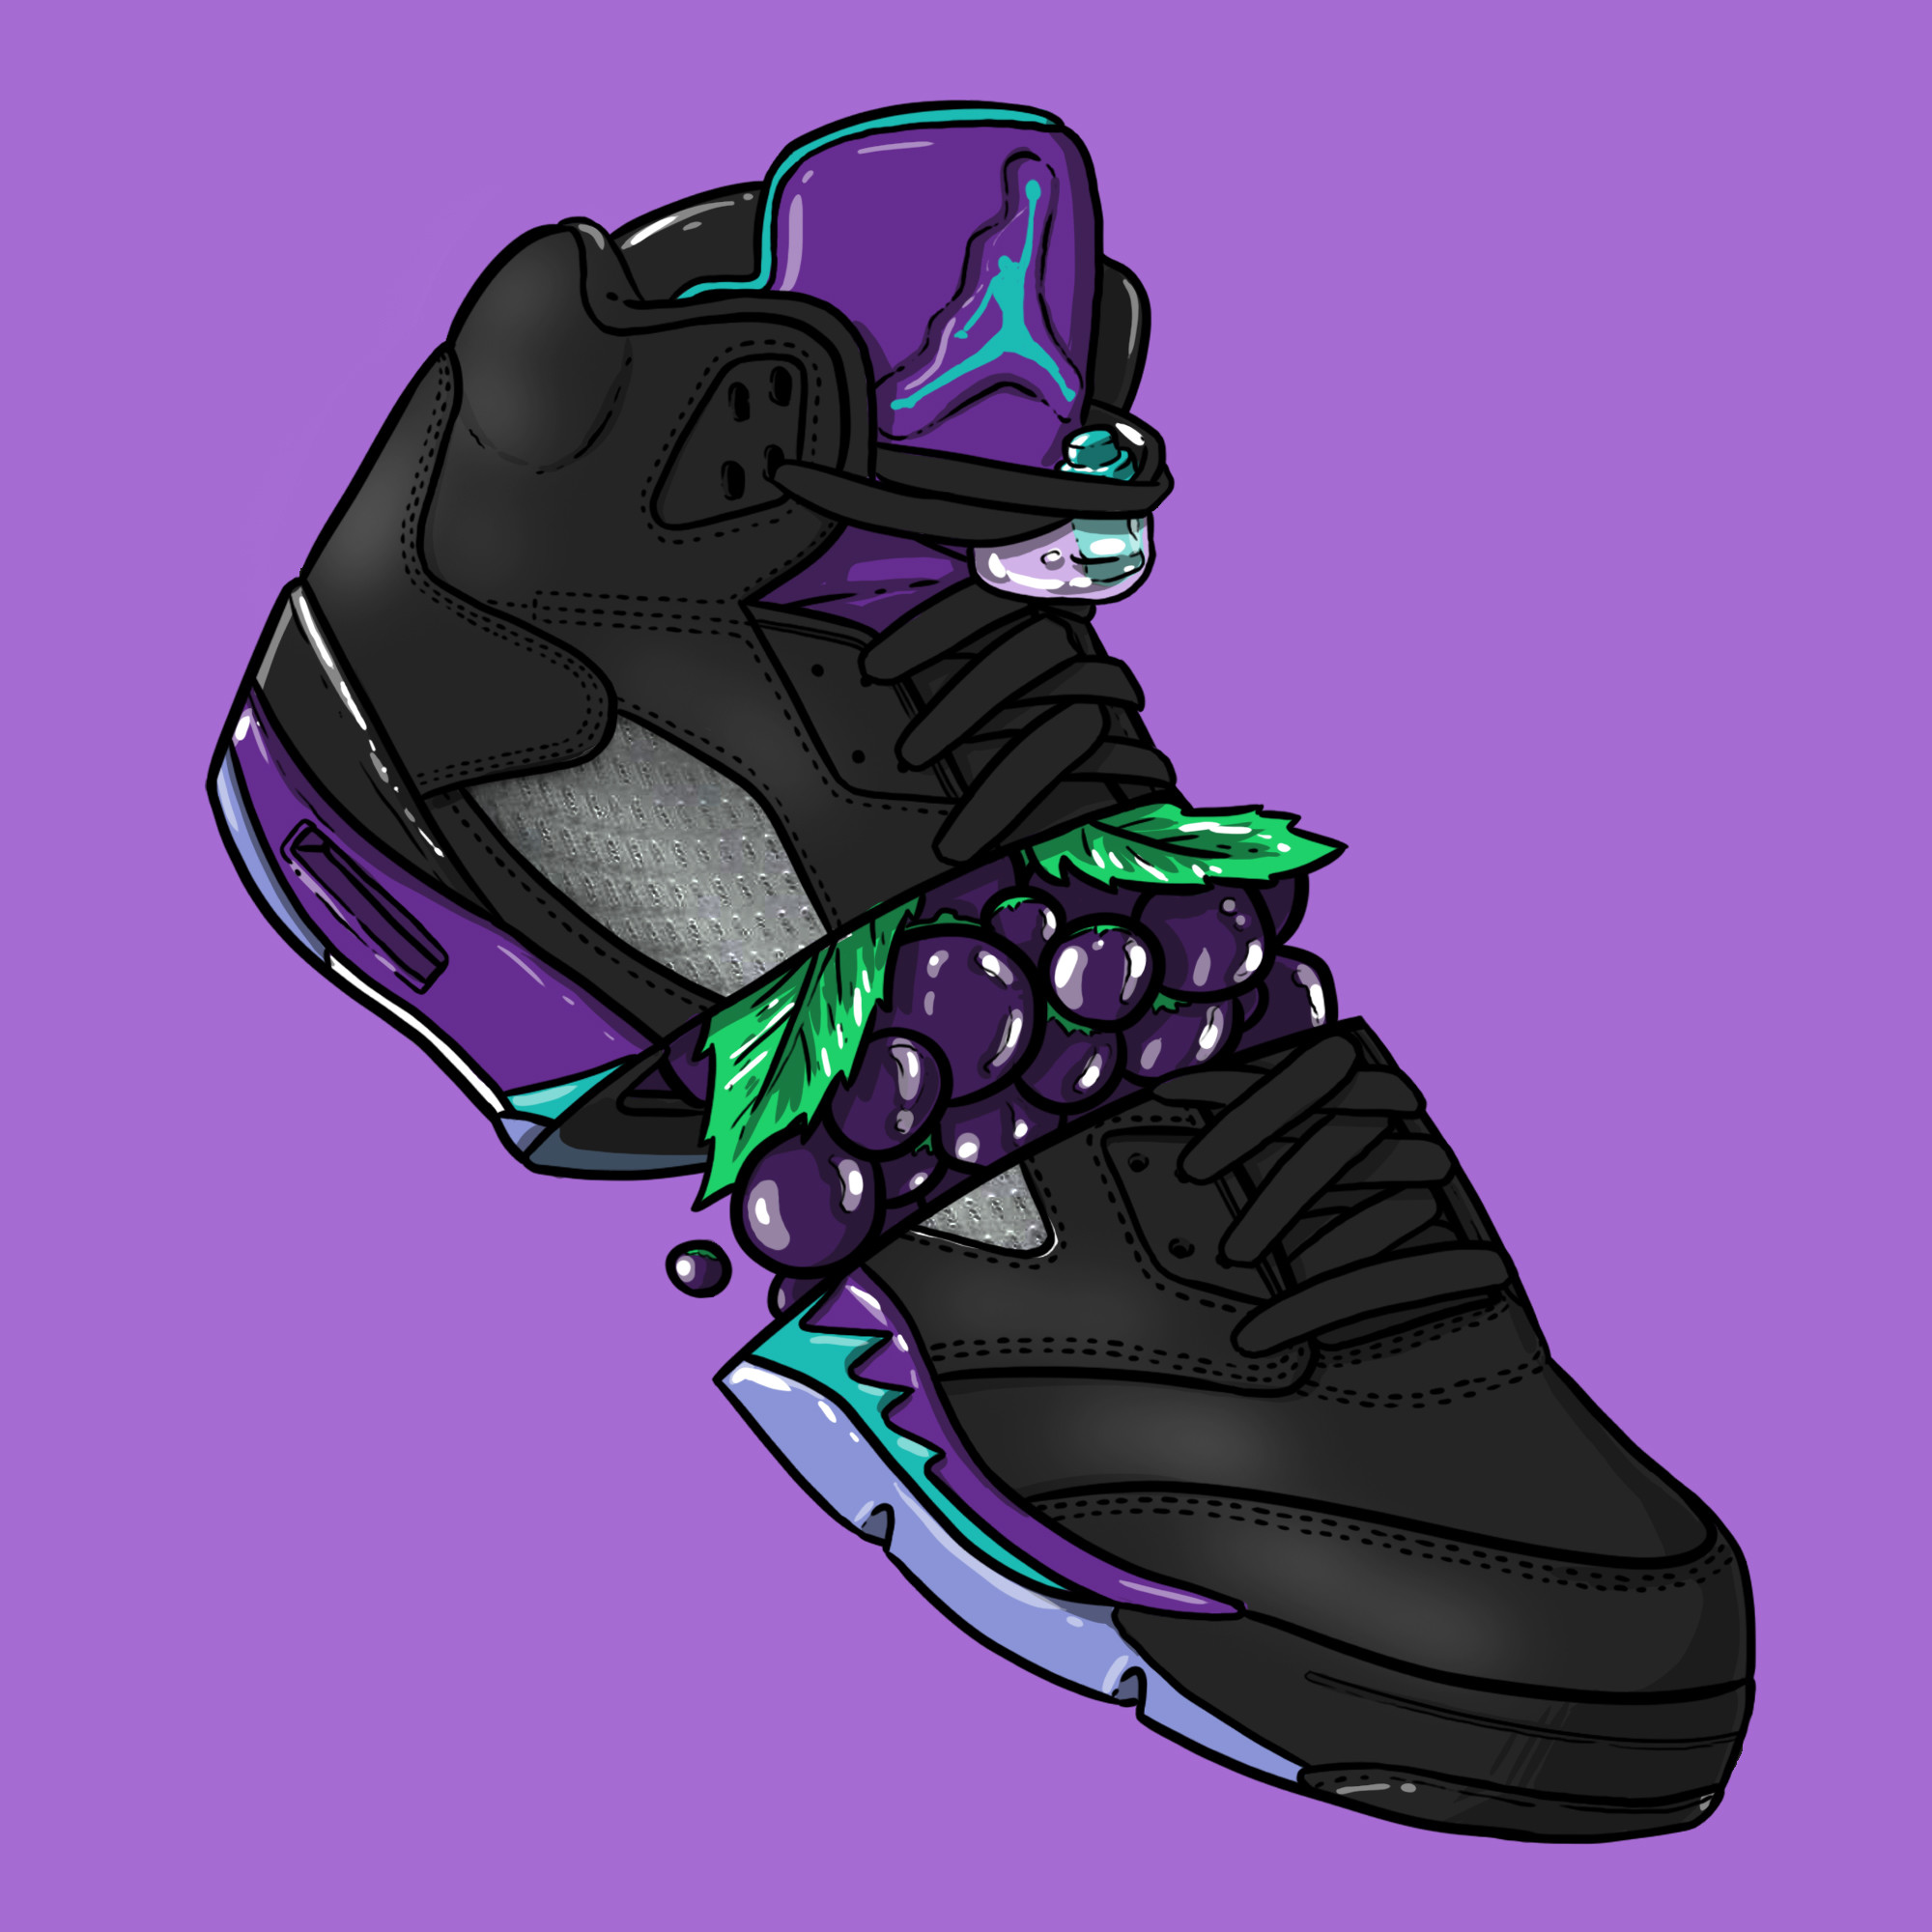 2000x2000 Sneaker Art - Jordan V "Black Grape"